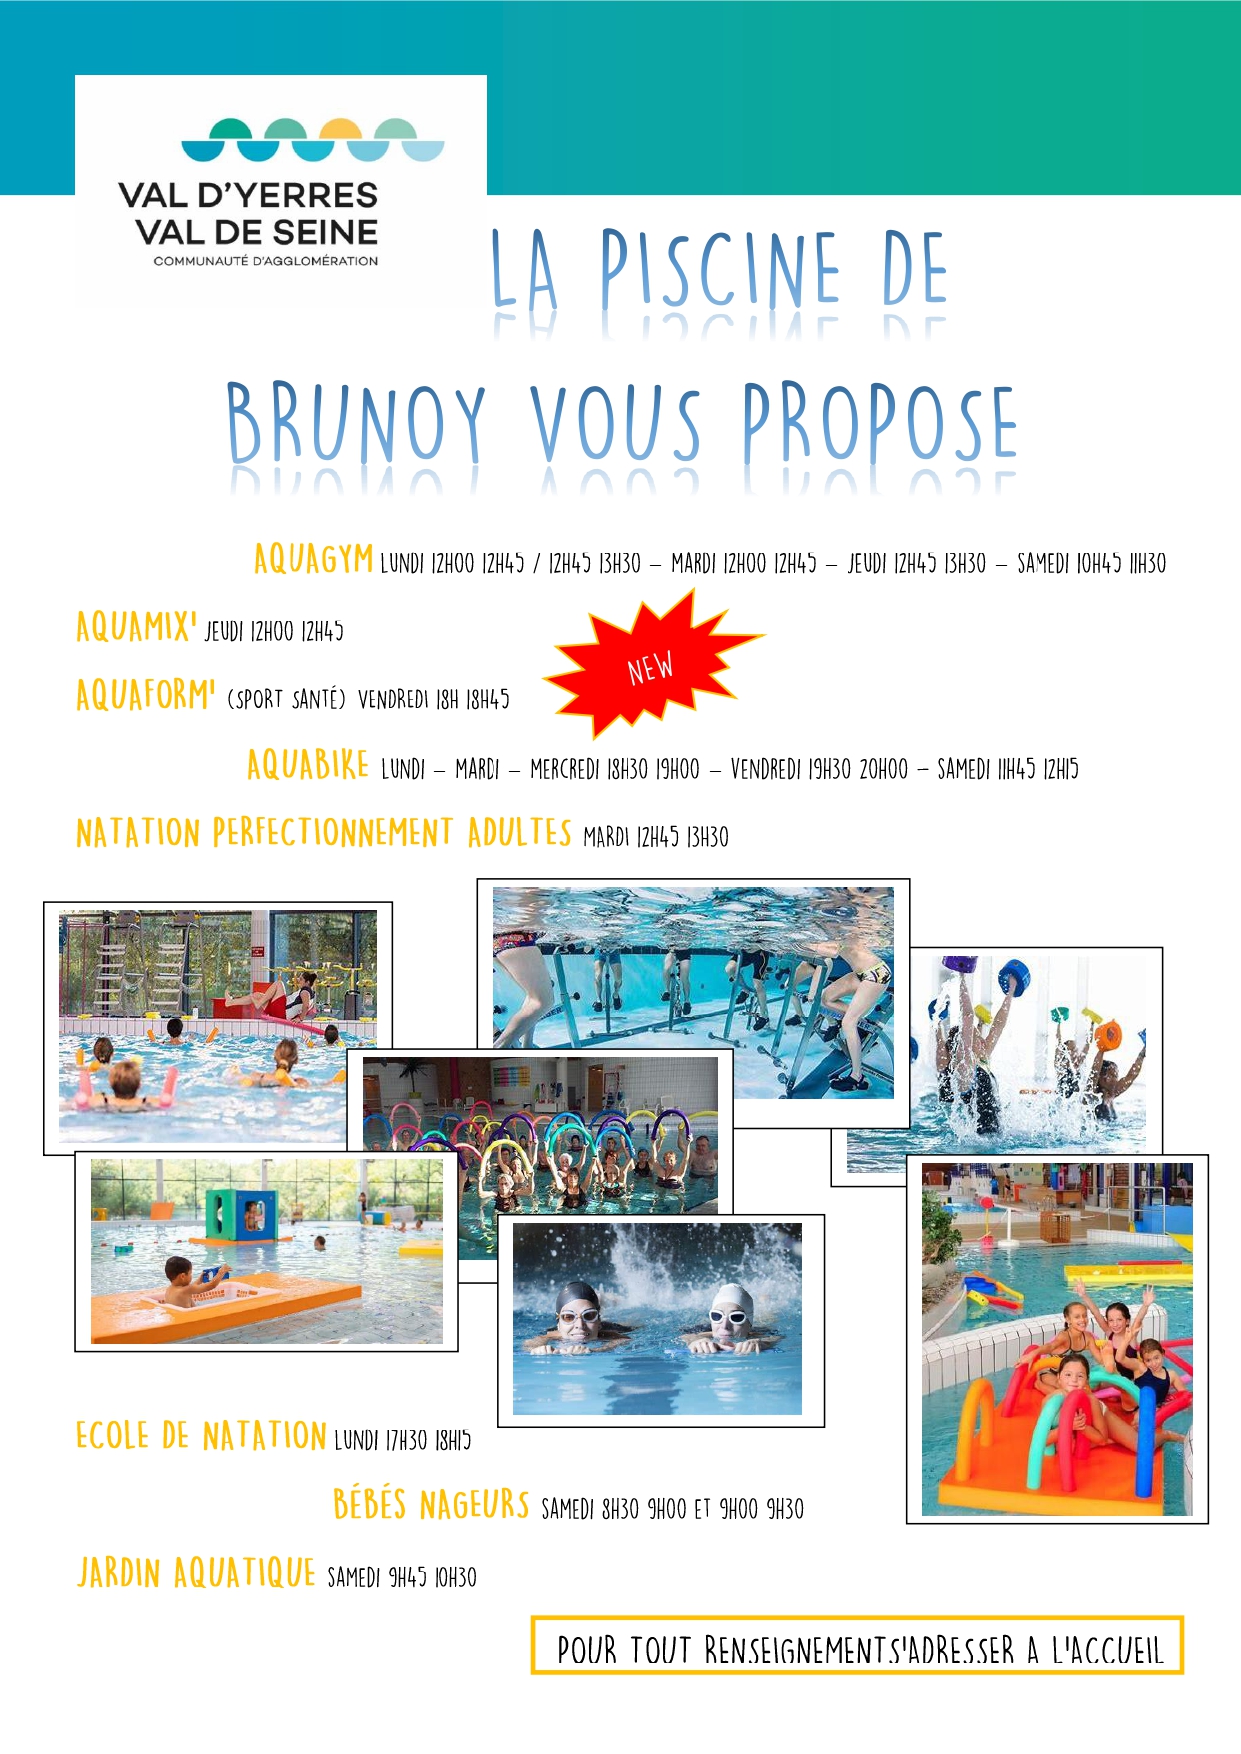 Les activités de la piscine de Brunoy